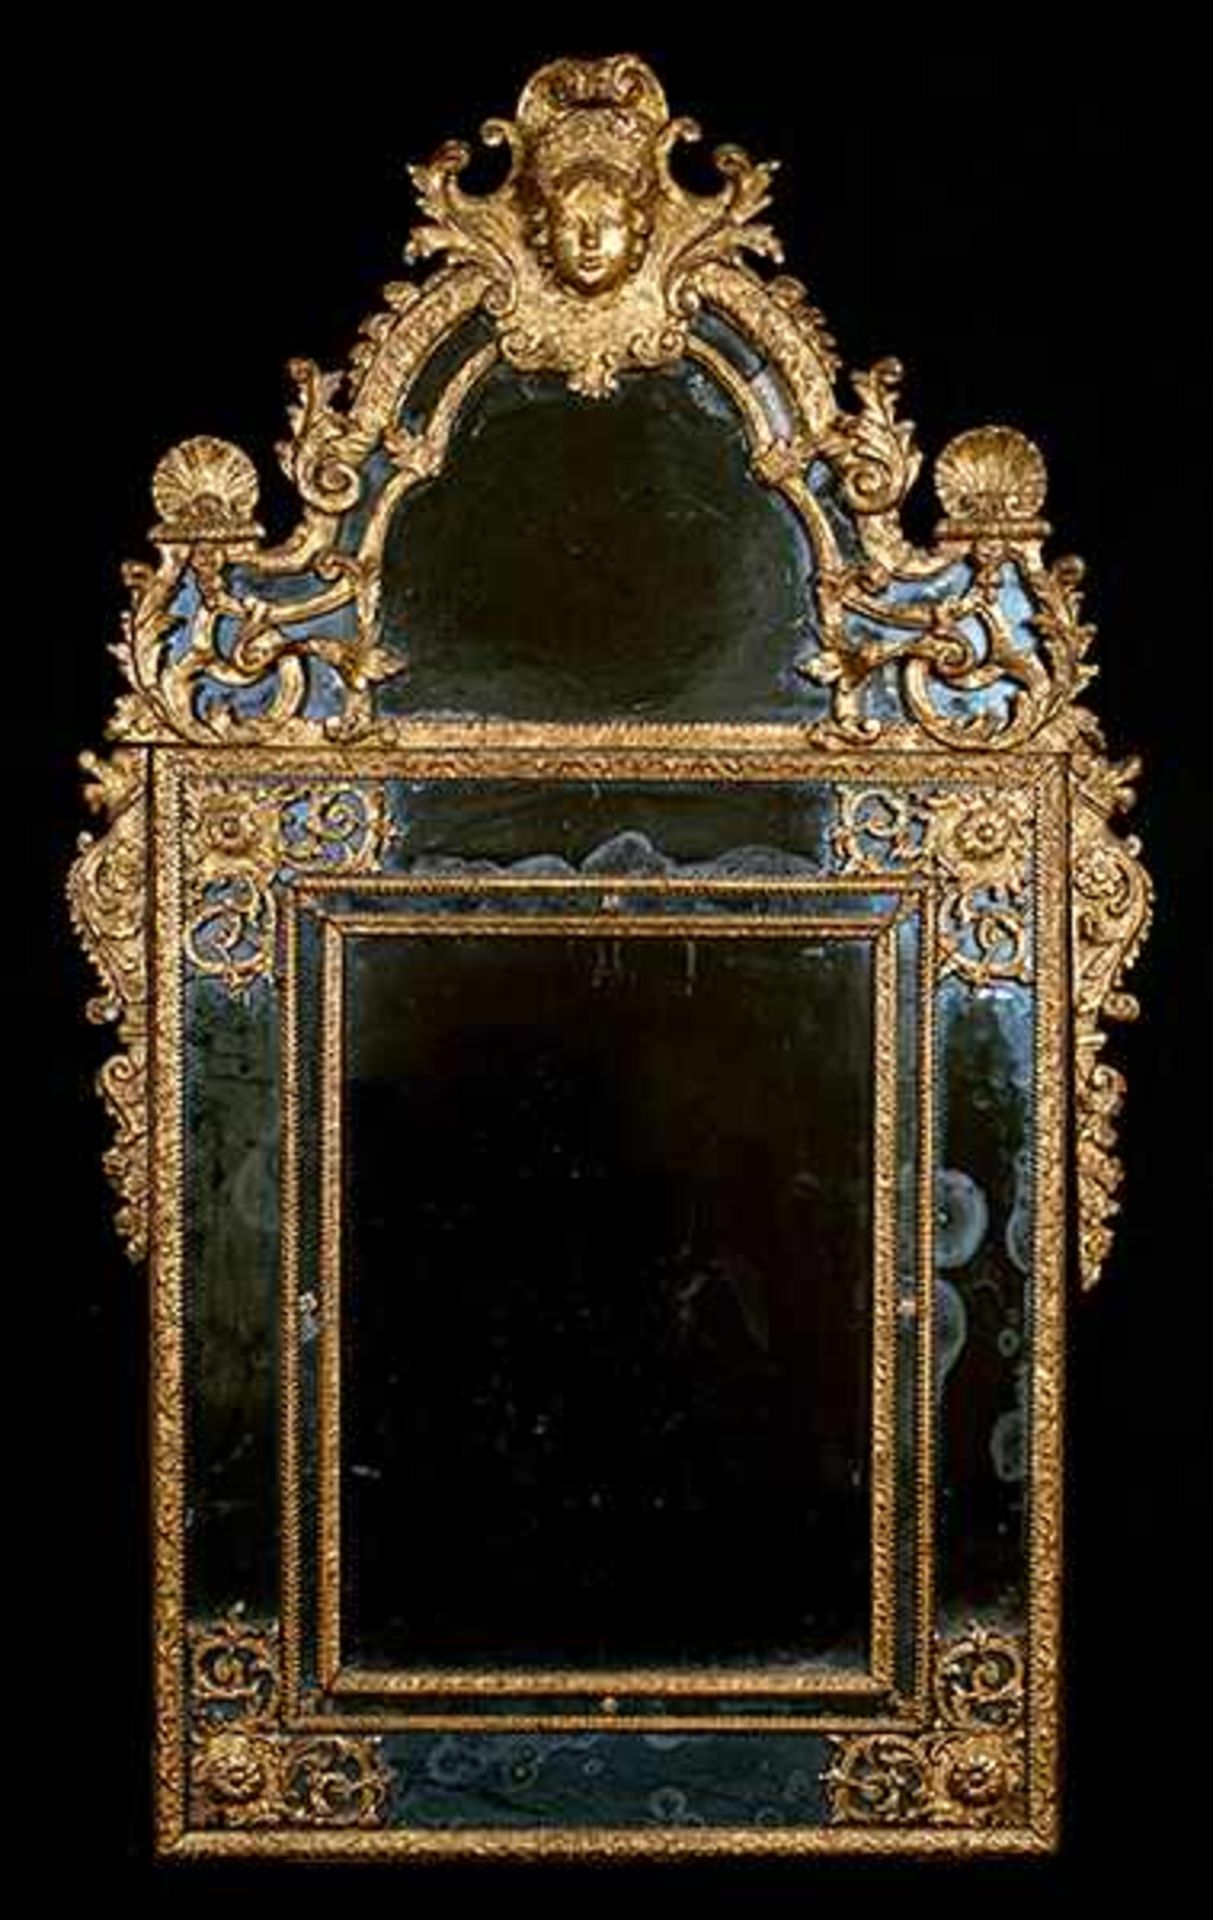 Großer Régence-Spiegel 175 x 91 cm. Frankreich, erstes Viertel 18. Jahrhundert. Hochrechteckige Form